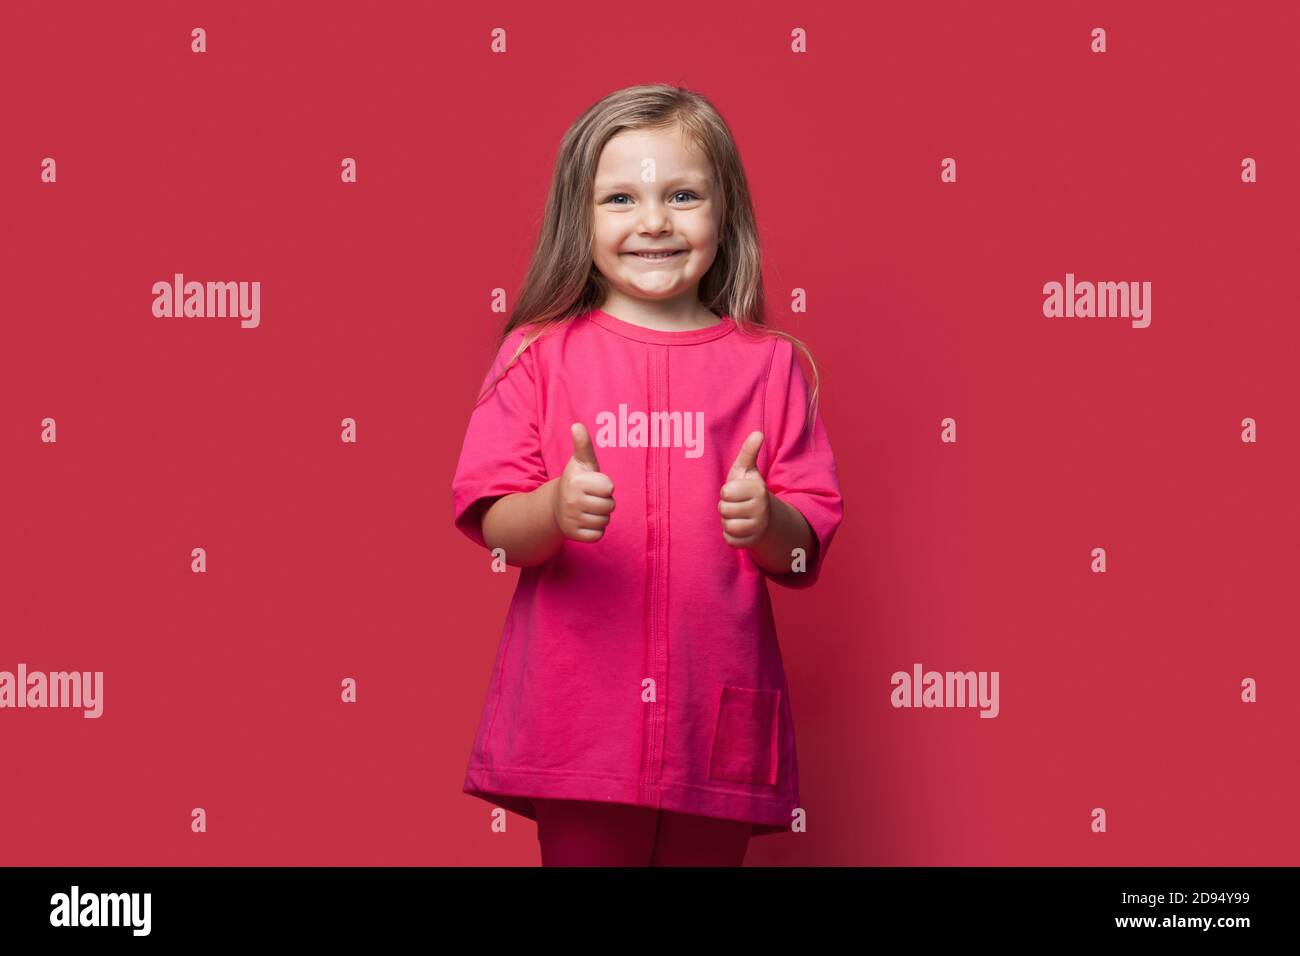 Foto monocroma de una chica rubia gestando el signo similar en una pared roja del estudio sonriendo a la cámara Foto de stock